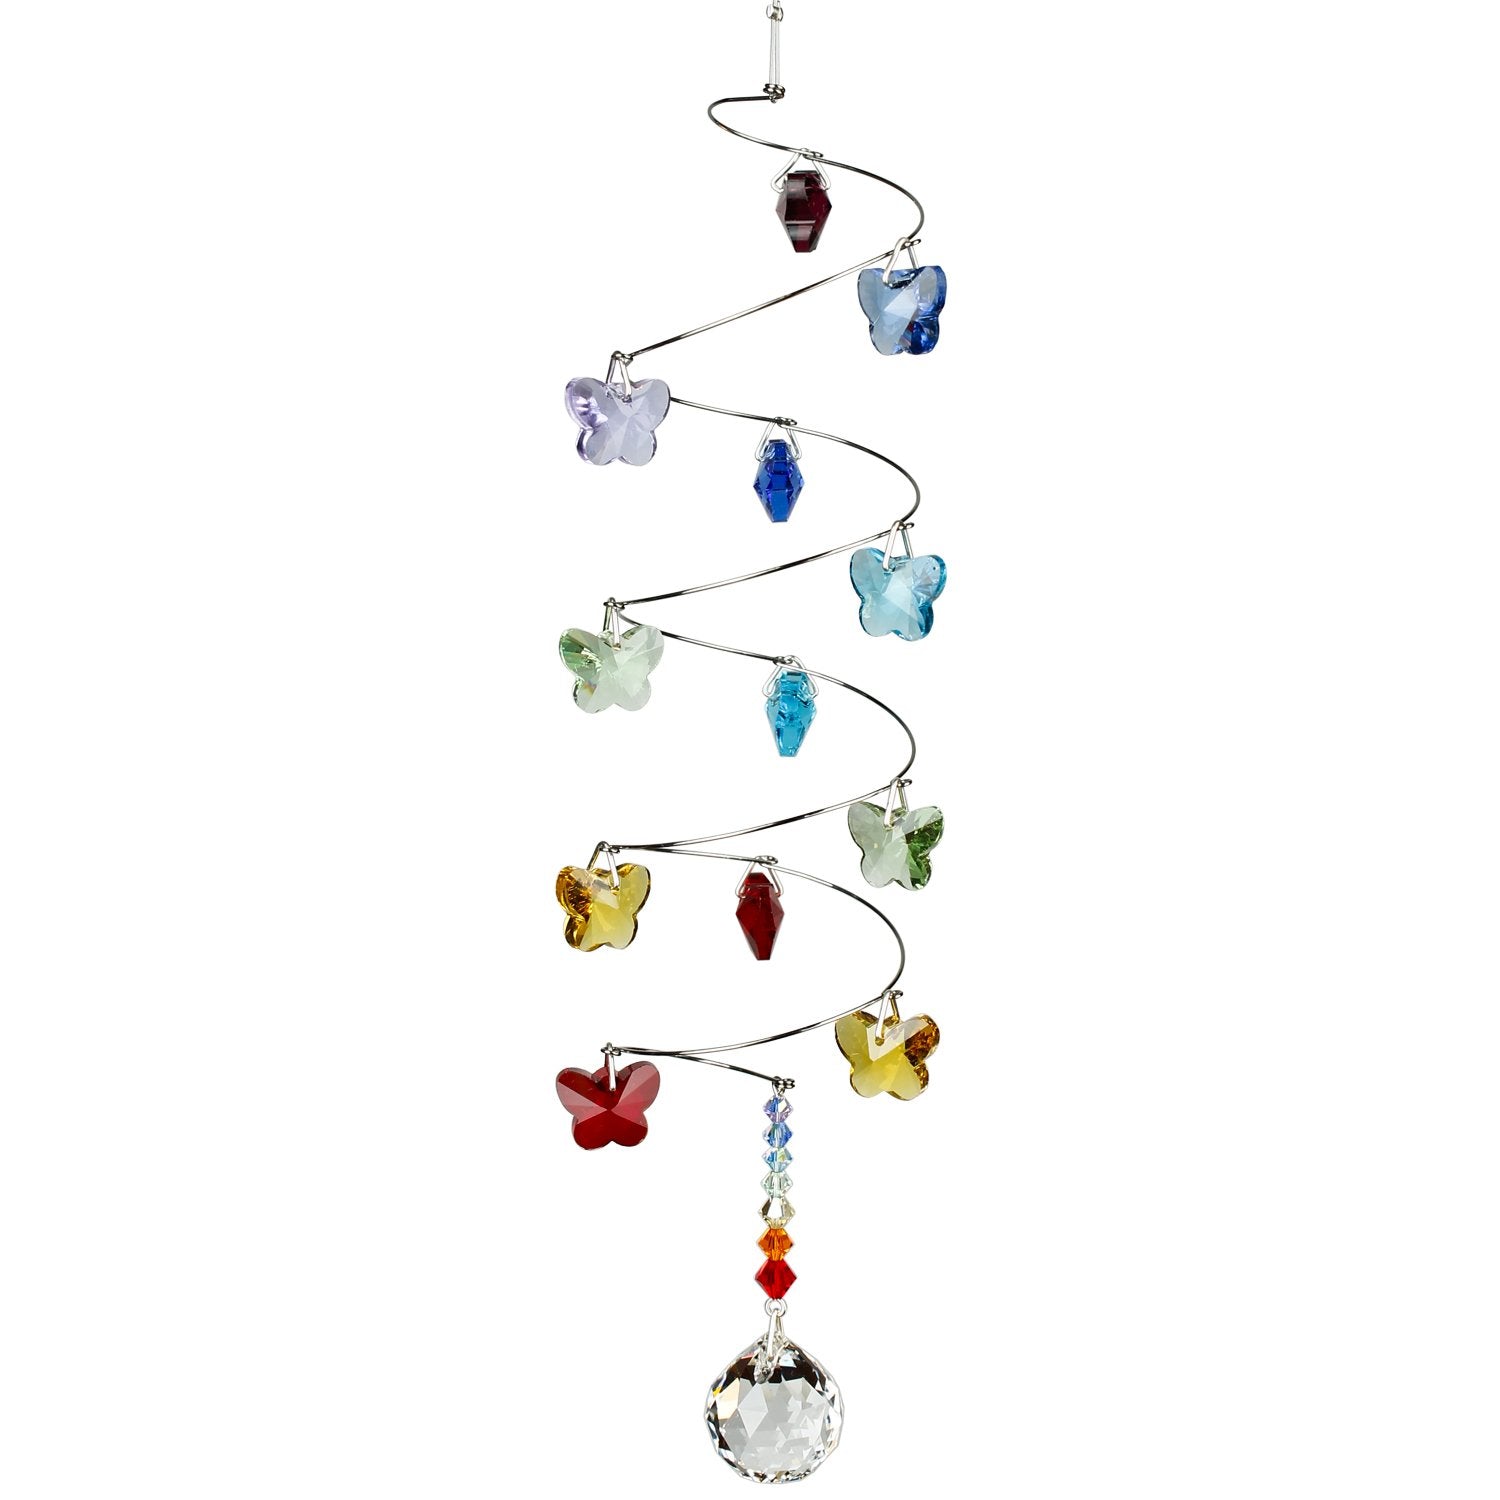 Crystal Spiral Cascade Suncatcher - Rainbow Butterflies, Small Ball alternate product image